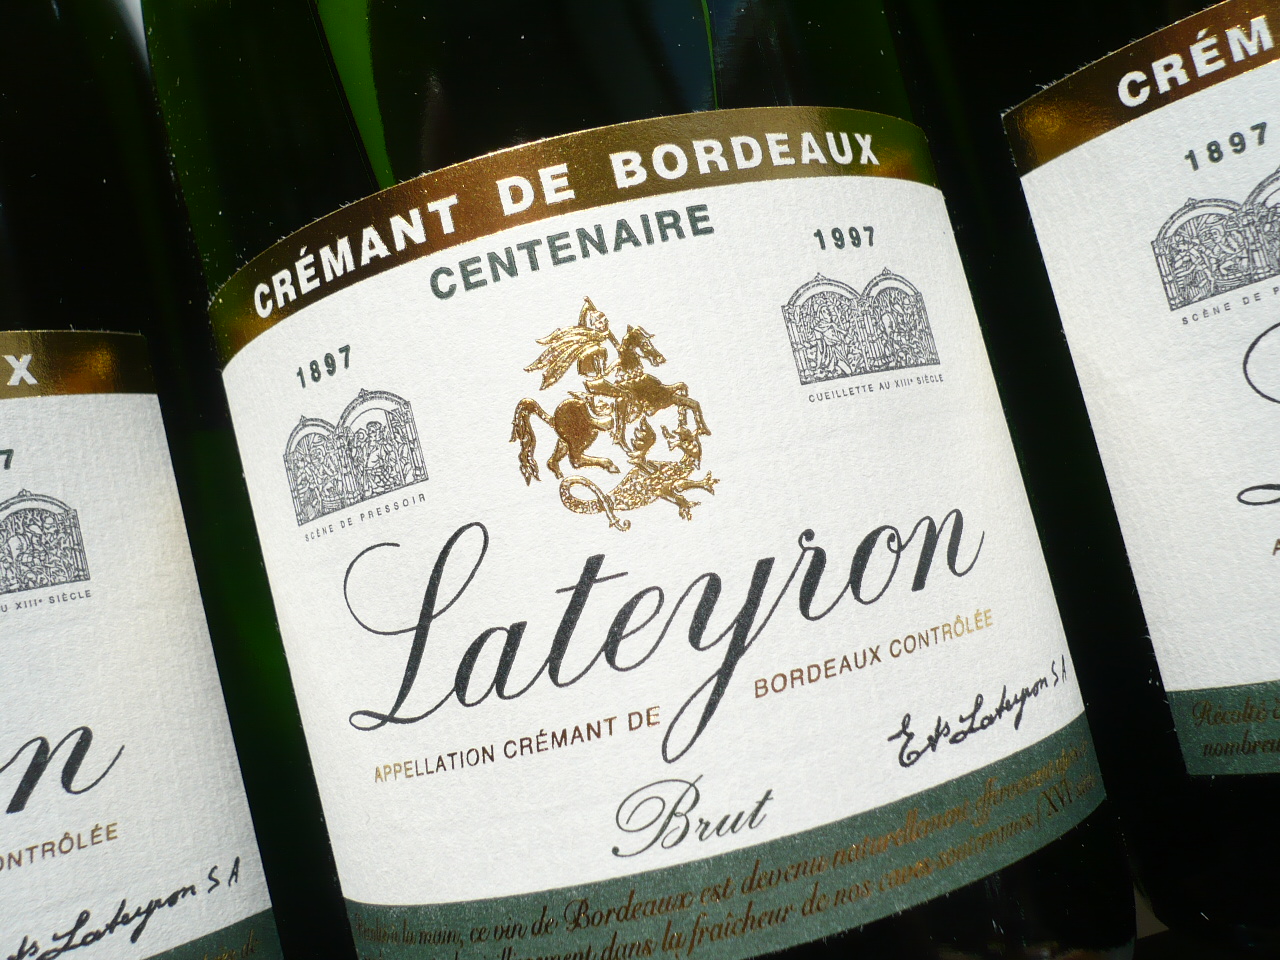 CRÉMANT DE BORDEAUX “Lateyron” brut Weinhandel -0,75l- – Fedelhören AOP im